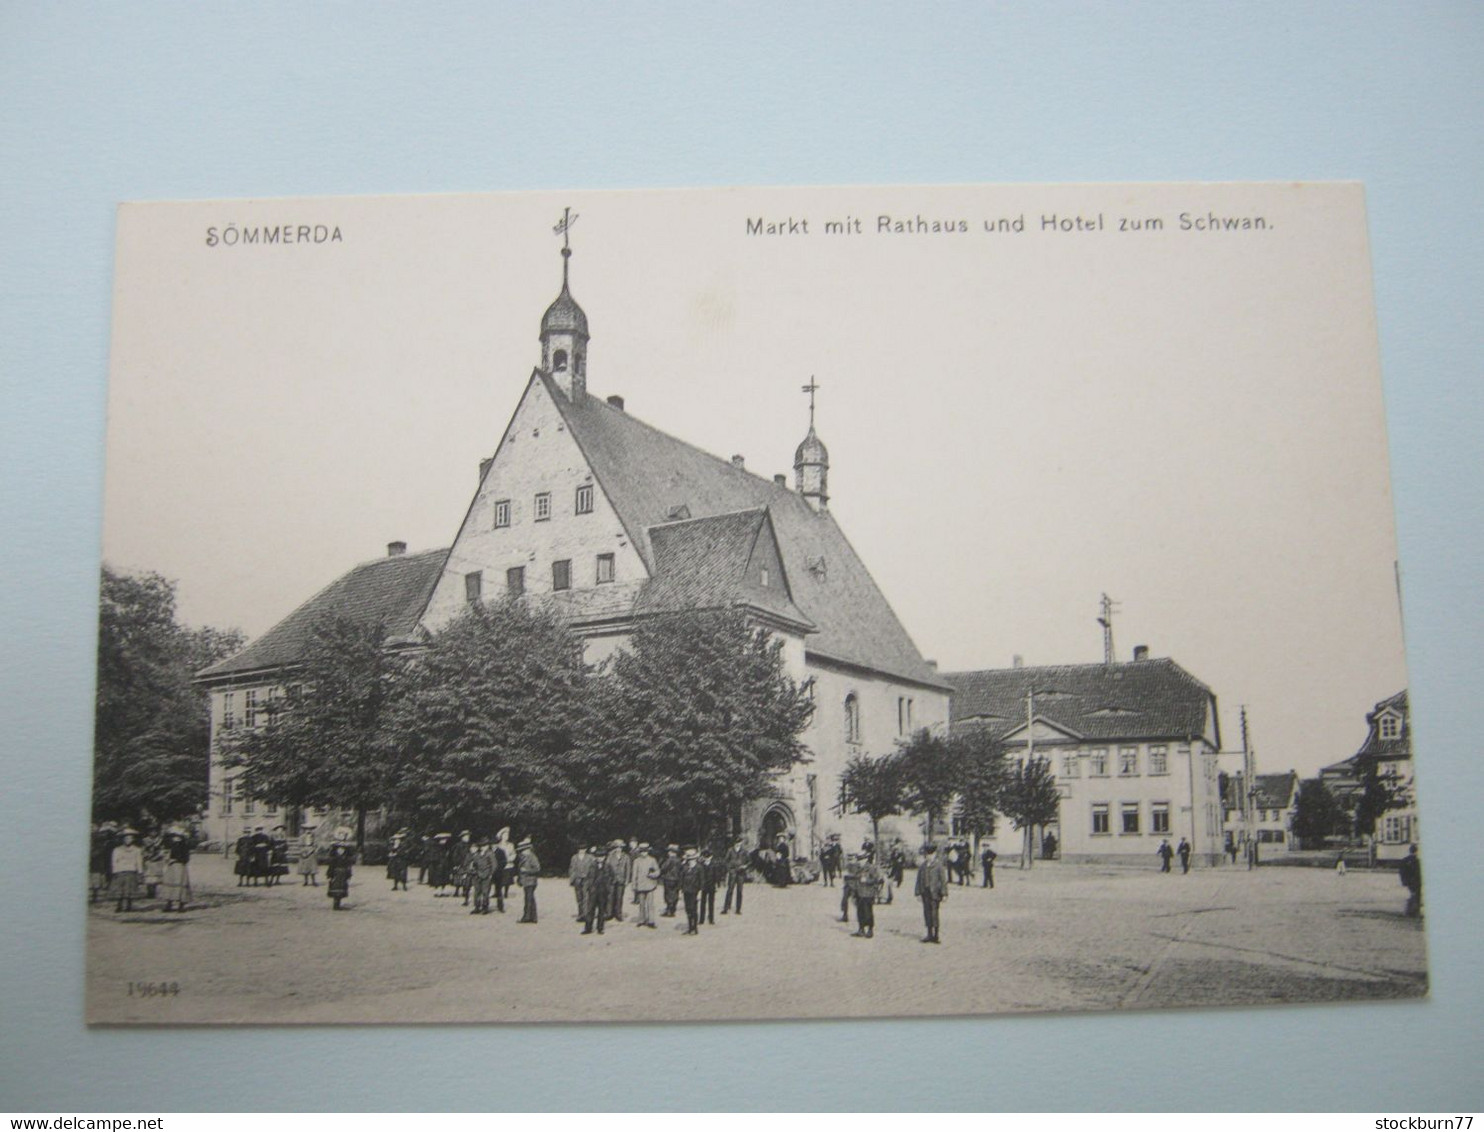 Sömmerda  ,  Schöne Karte  Um 1908 - Soemmerda